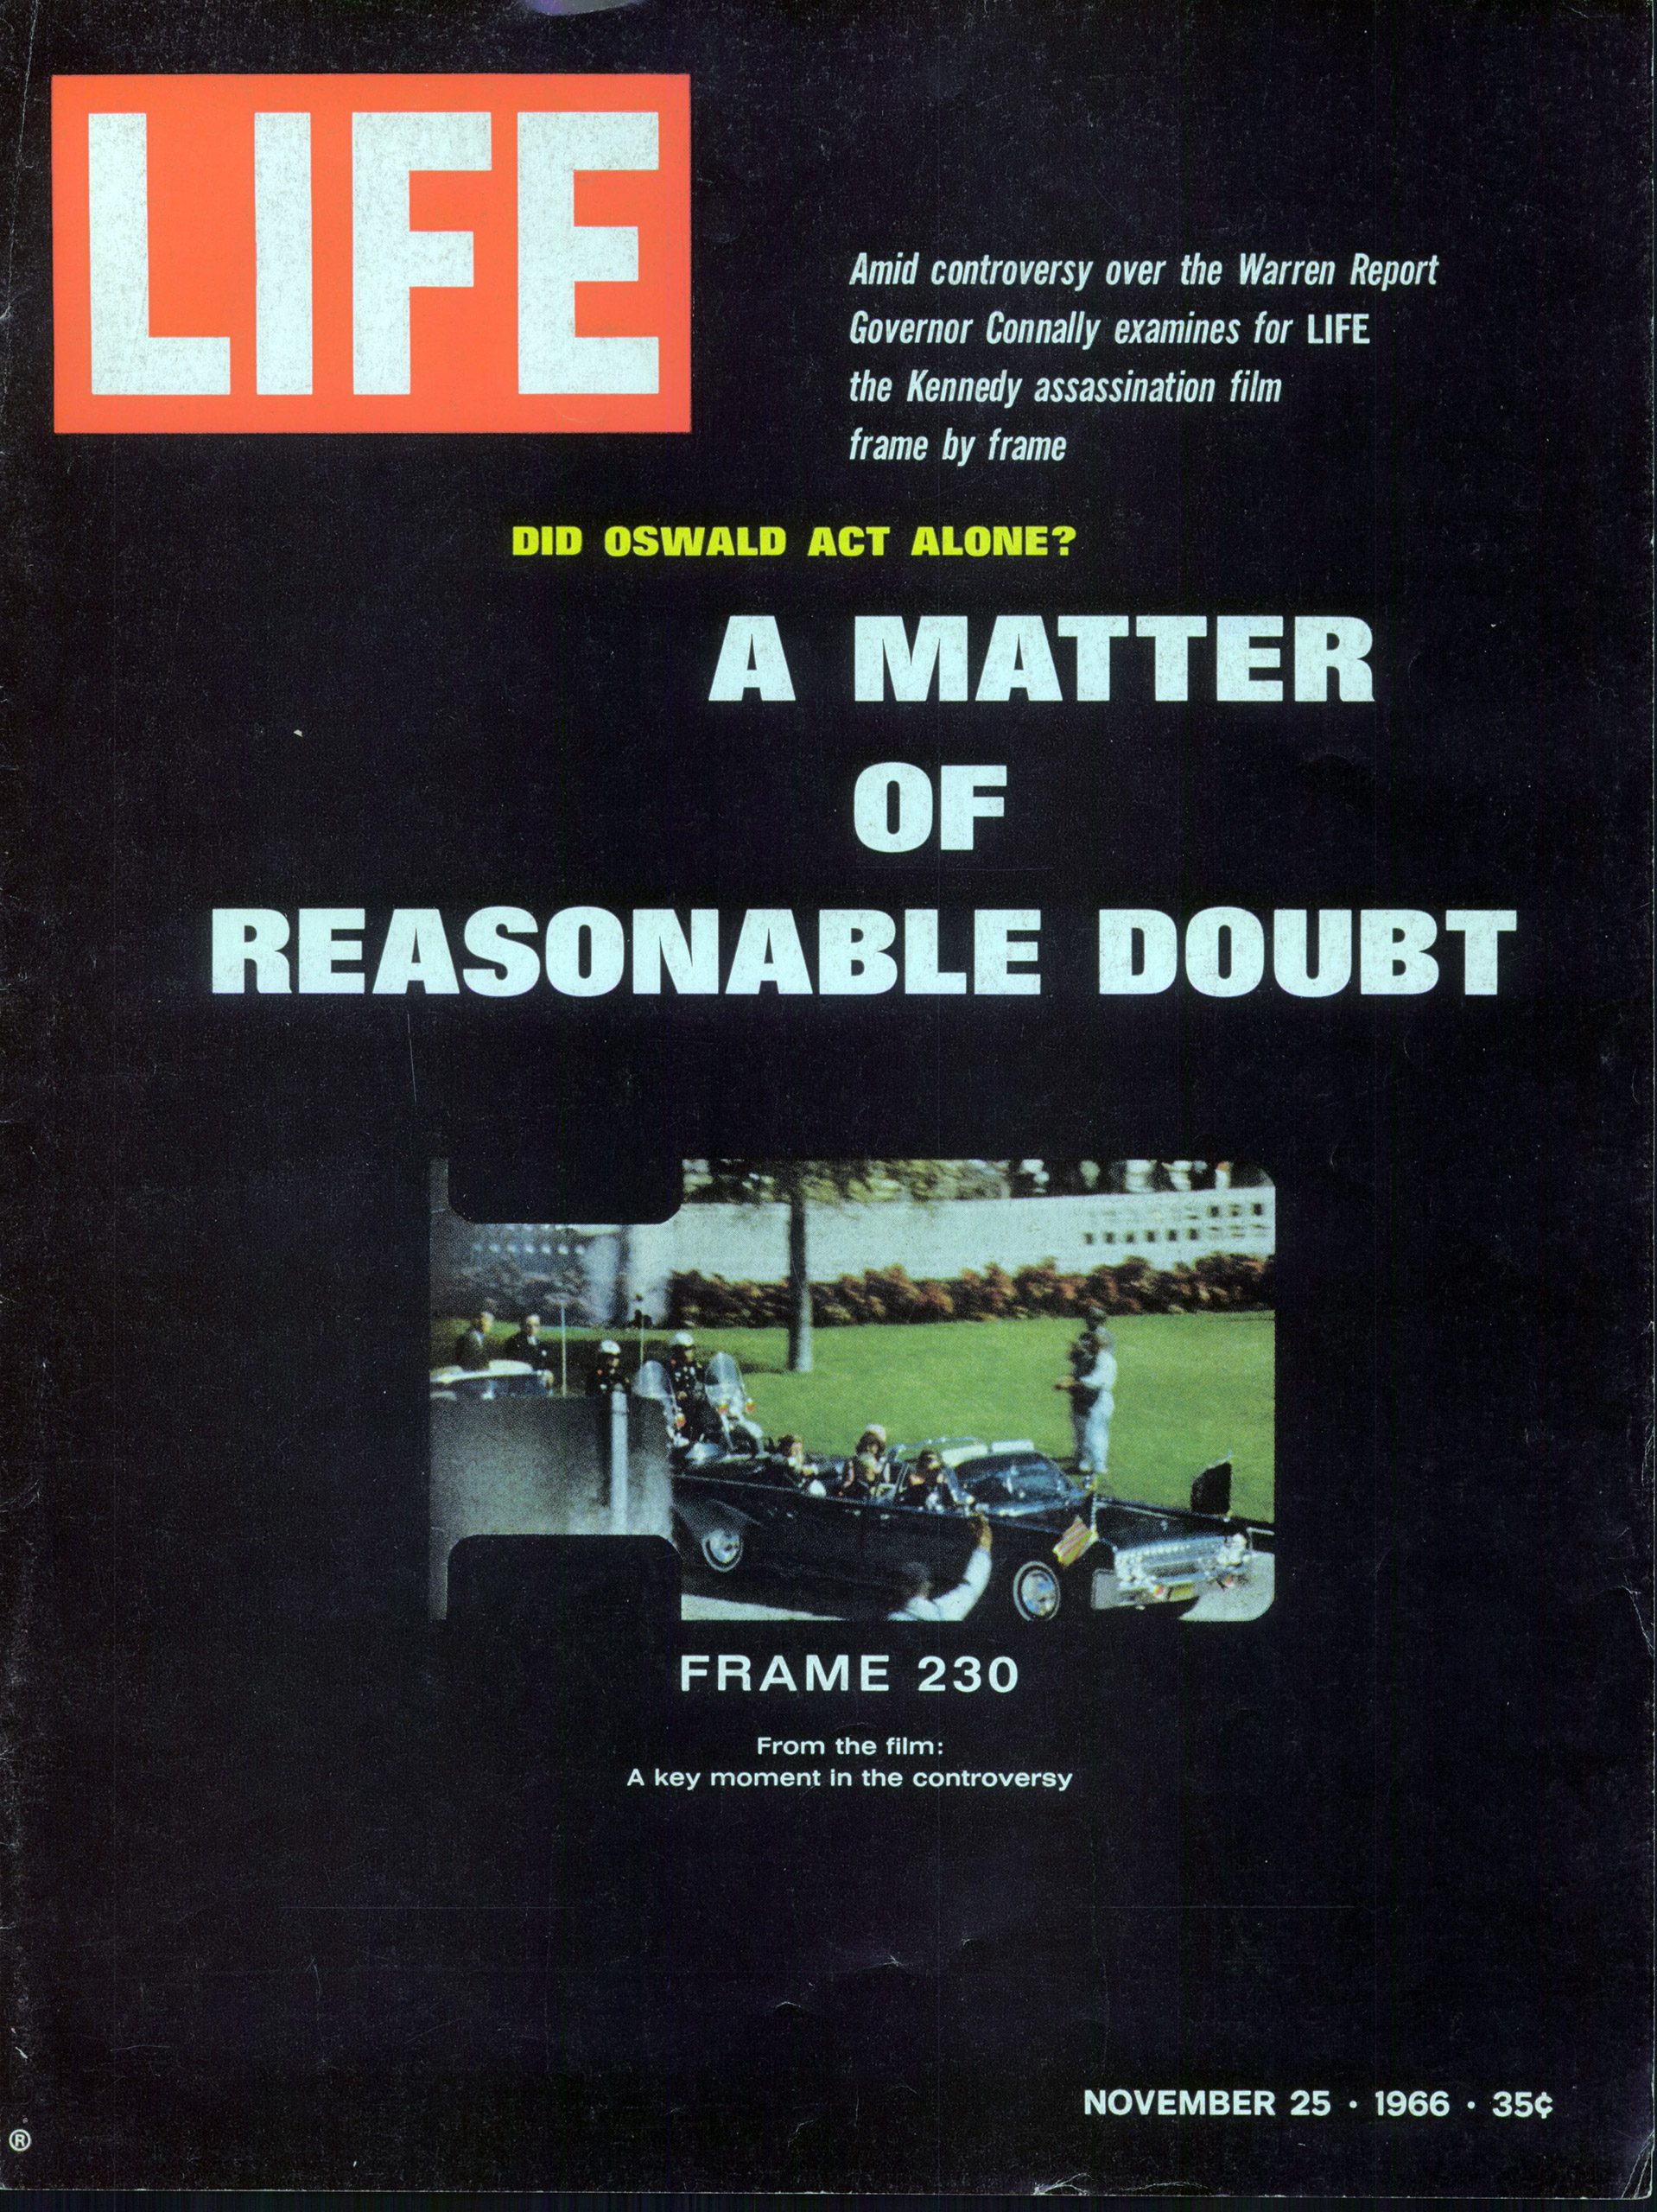 Nov. 25, 1966 cover of LIFE magazine.